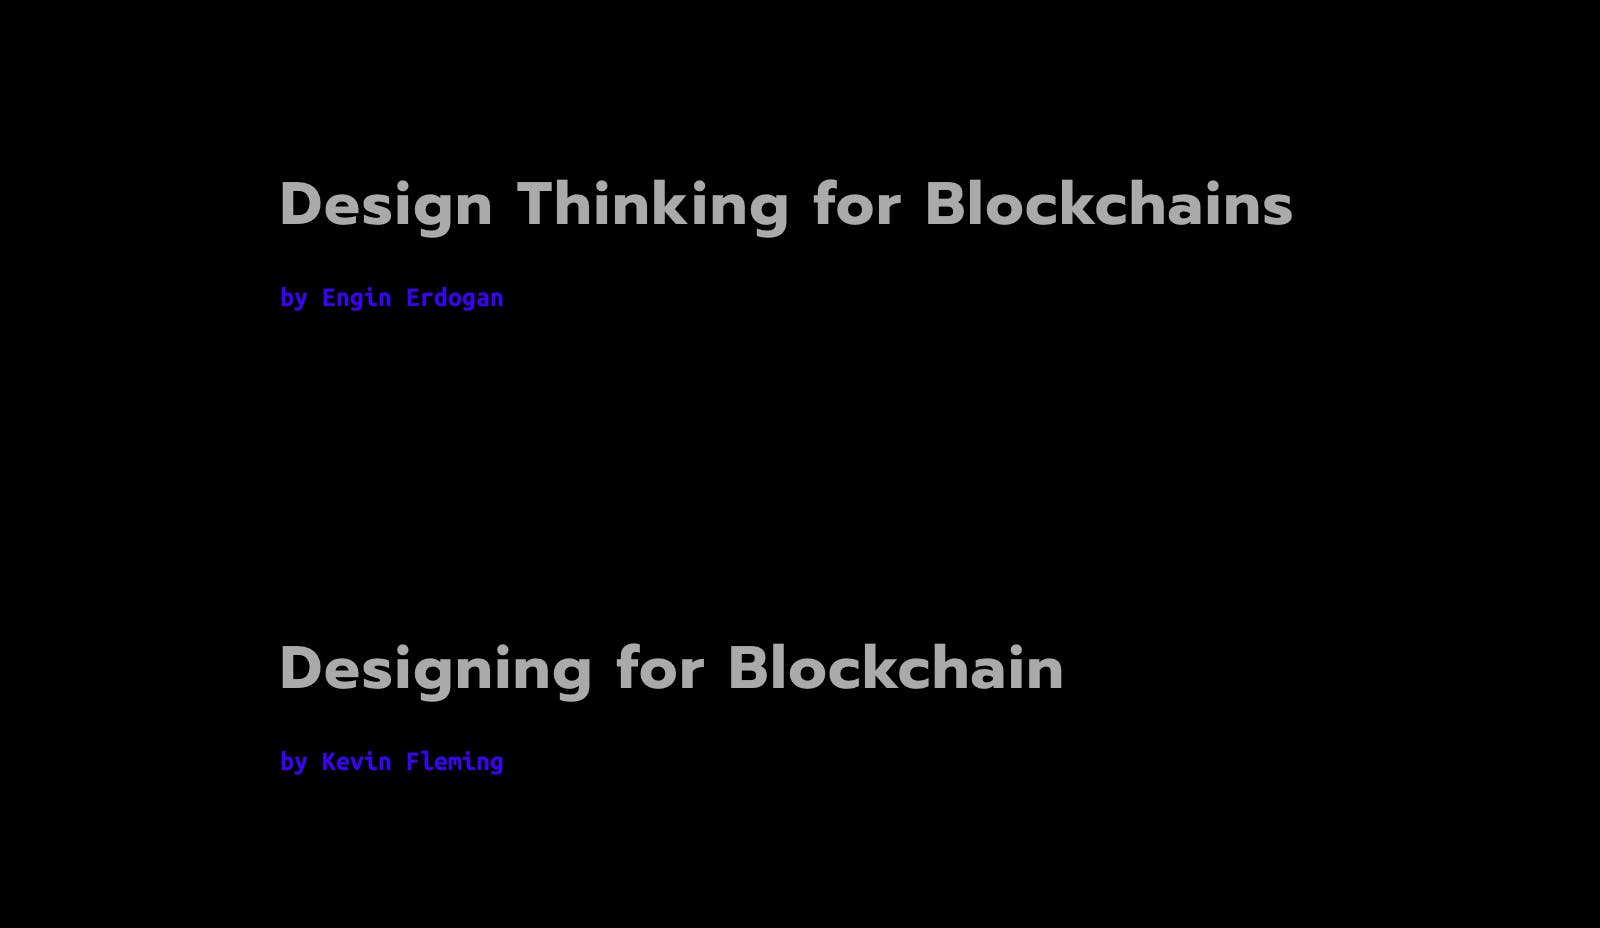 Design for Blockchain media 2